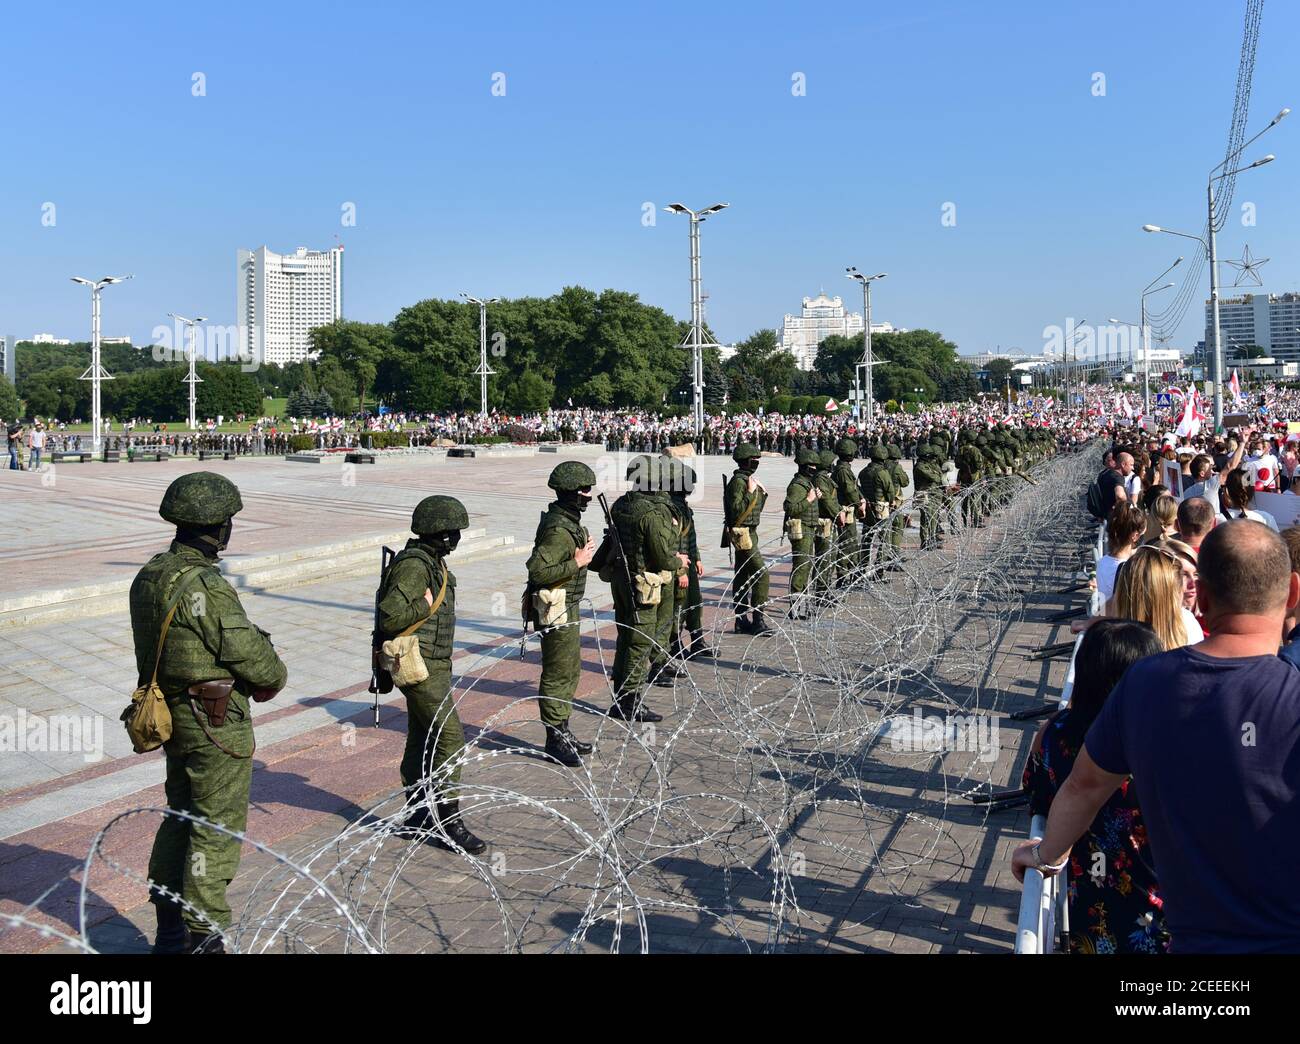 Las protestas masivas se concentran en la estela 'Minsk' contra el resultado de las elecciones y la violencia policial. El ejército bloquea las calles con alambre de púas. MINSK, BIELORRUSIA - AUGUS Foto de stock